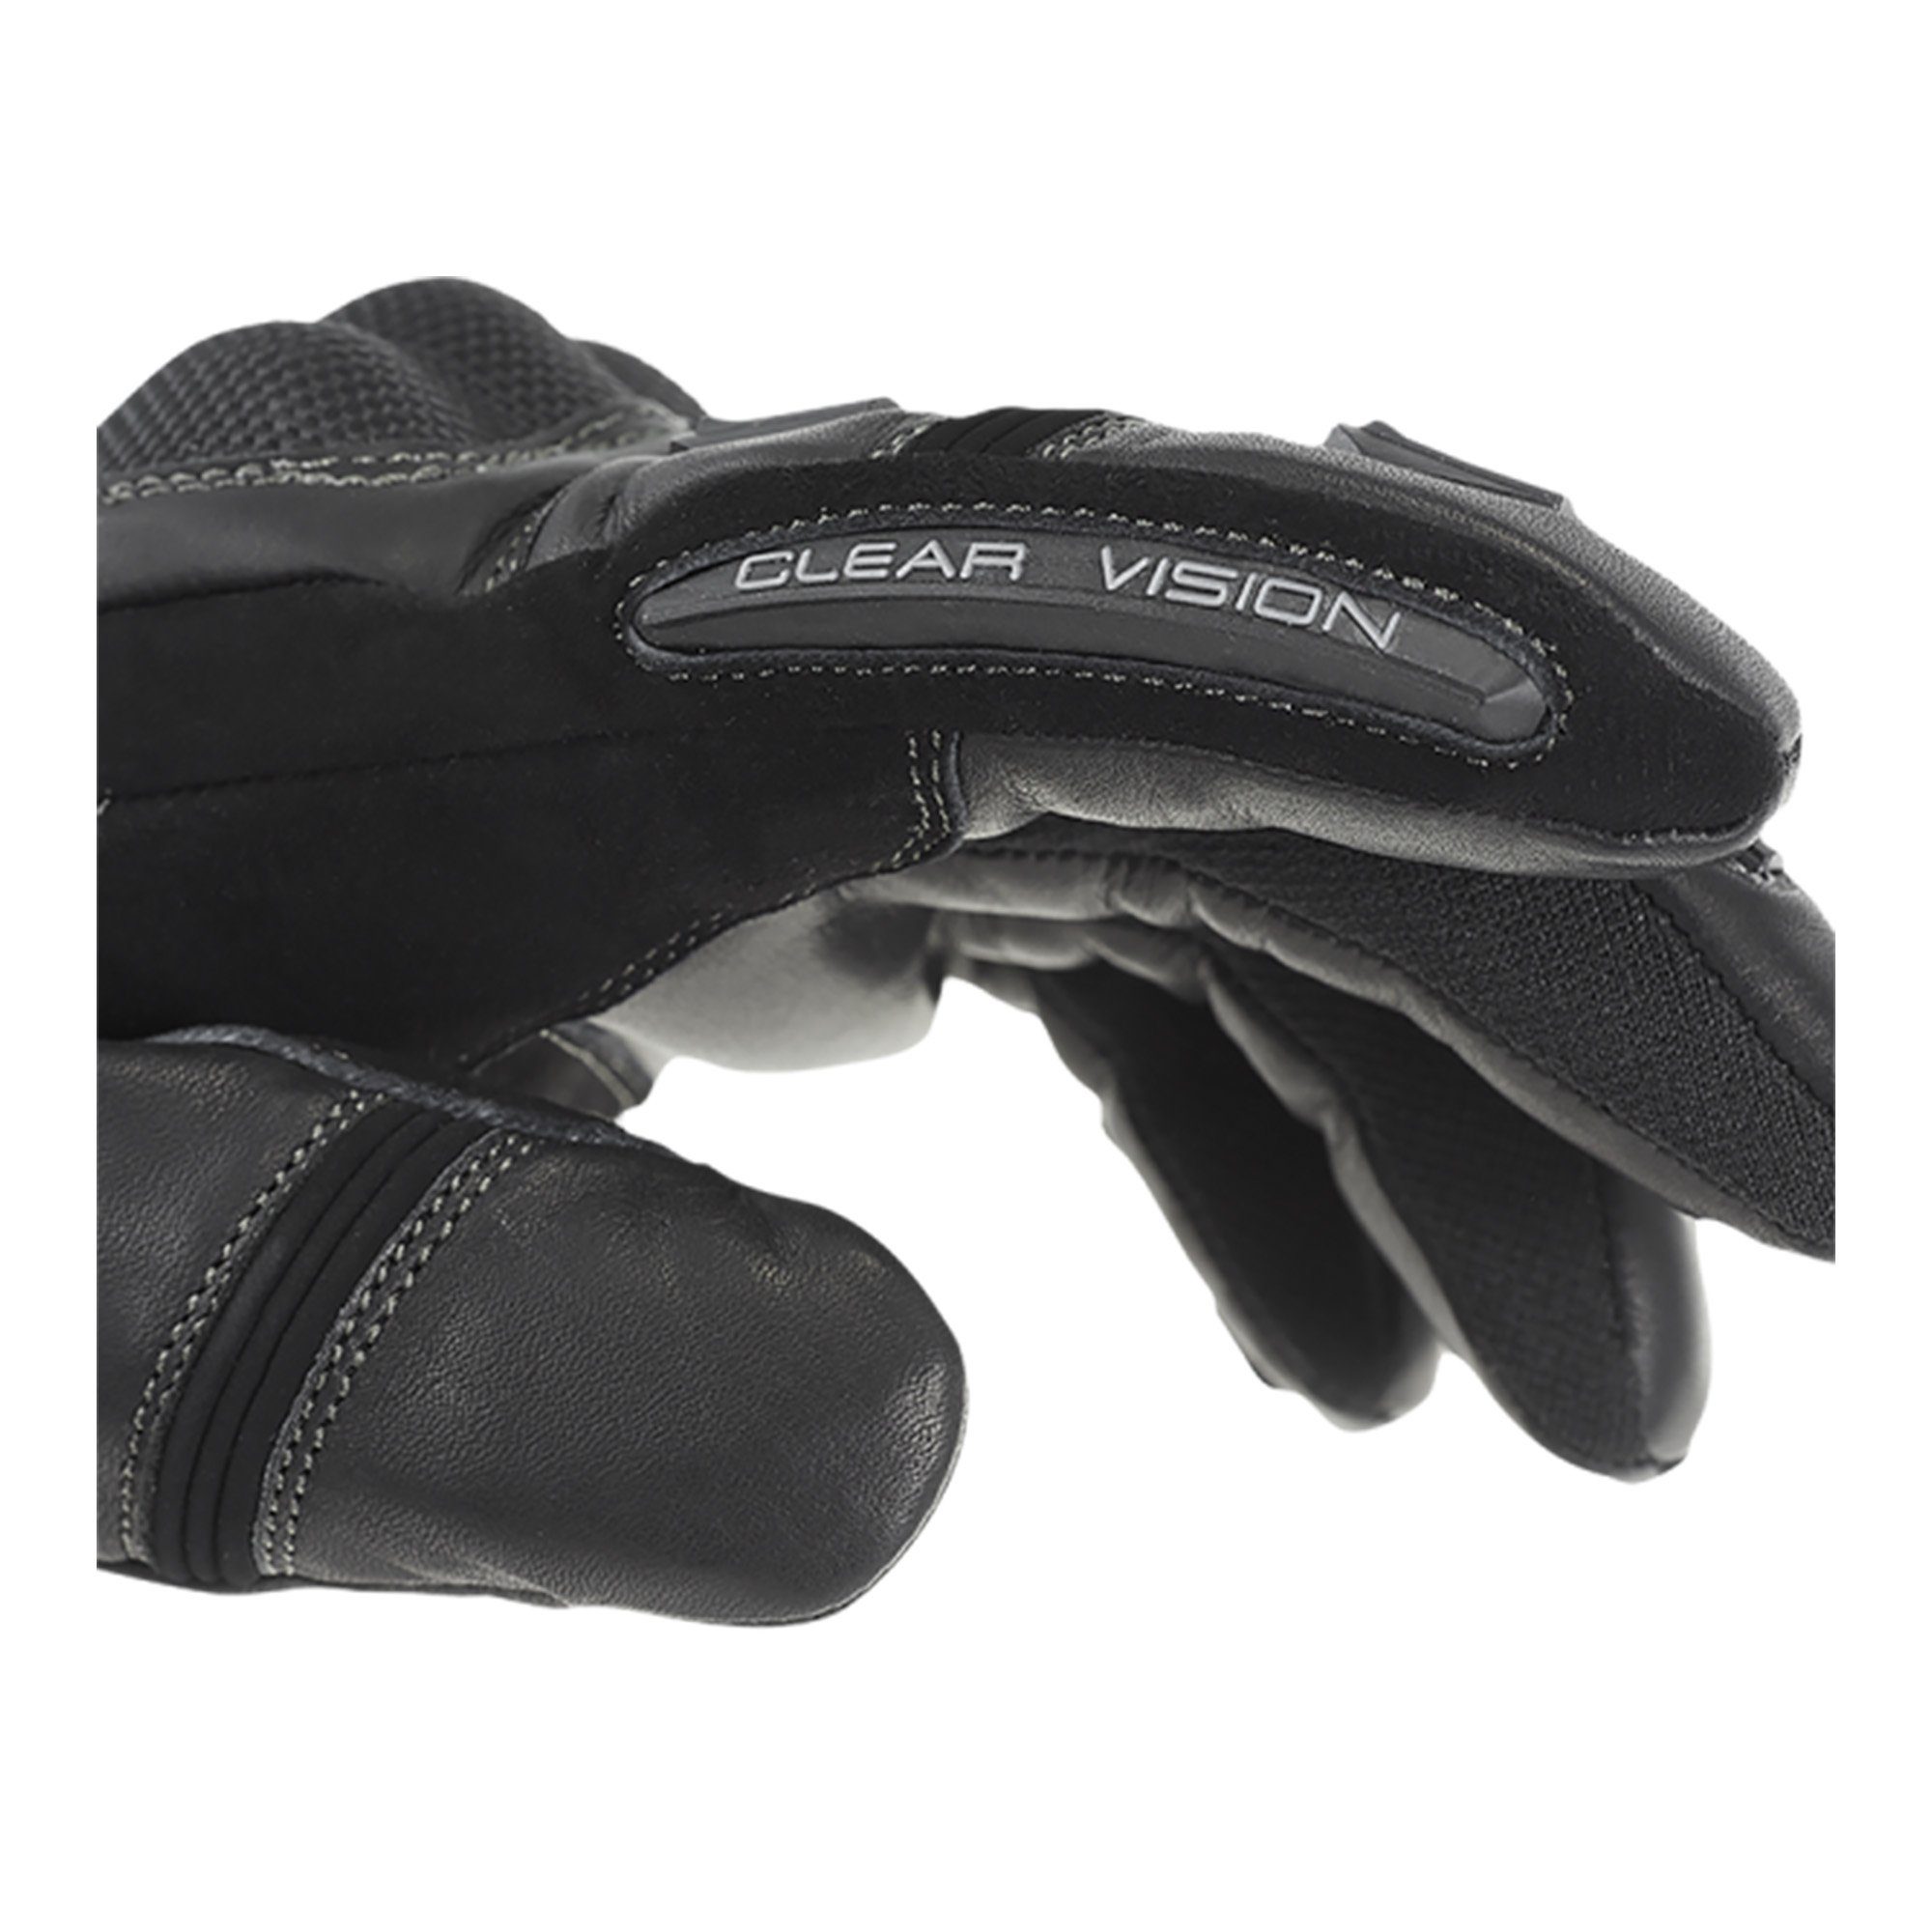 Protektoren winddicht Handschuhe Leder Büse wasserdicht mit ST Büse atmungsaktiv Impact Motorradhandschuhe schwarz